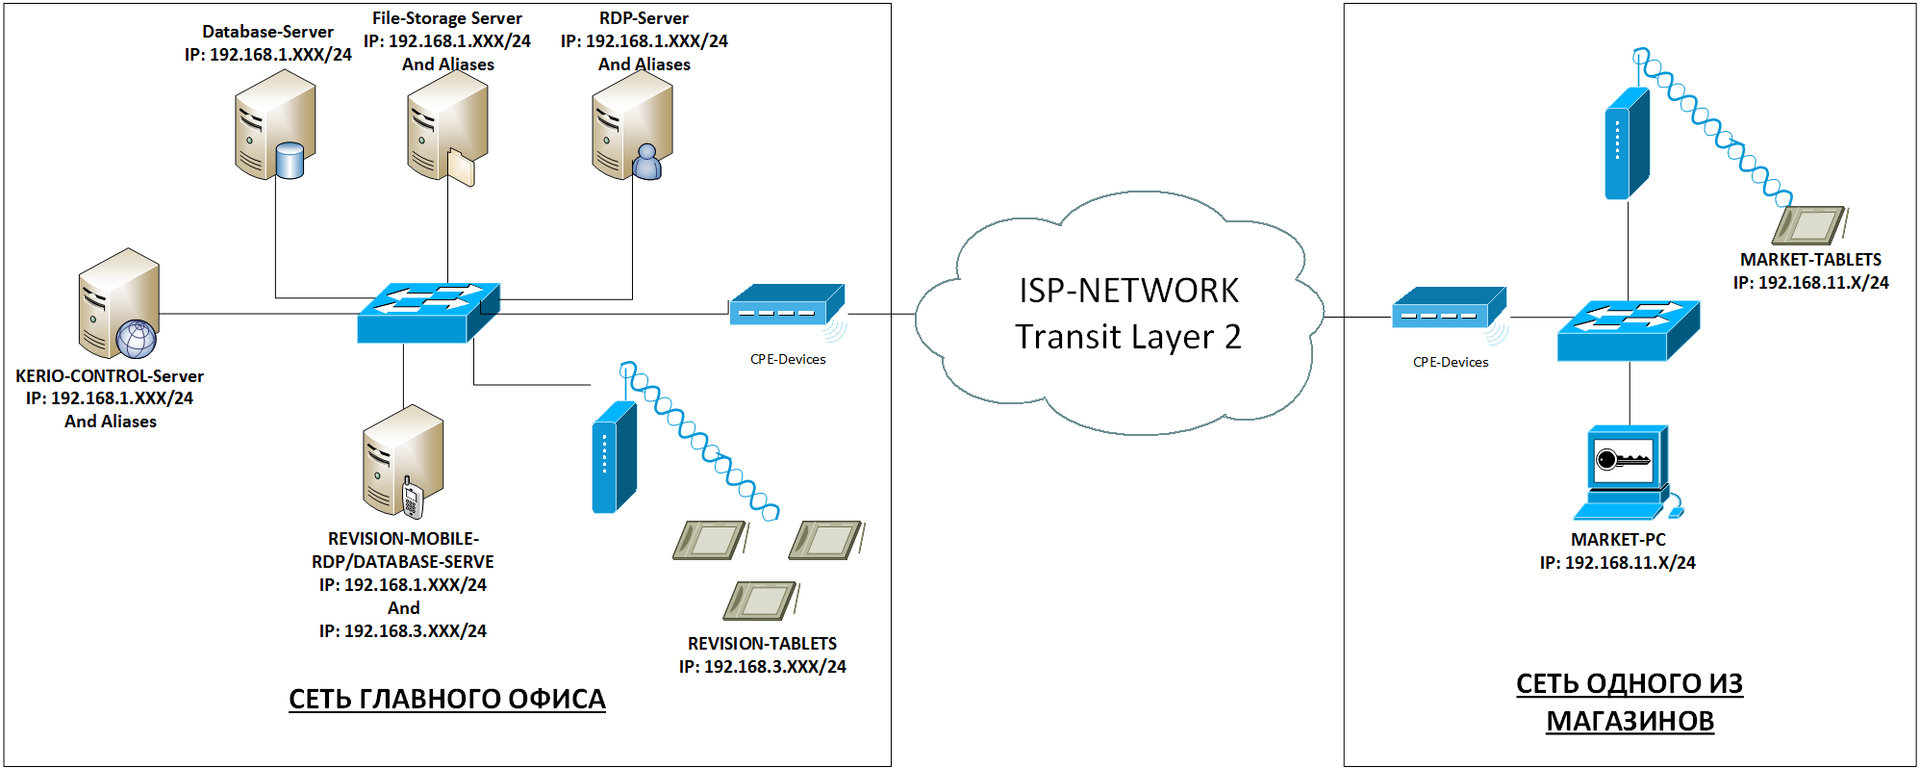 Как я ловил Wi-Fi принтер по OSPF, корпоративная сеть на MikroTik часть 2 - 2